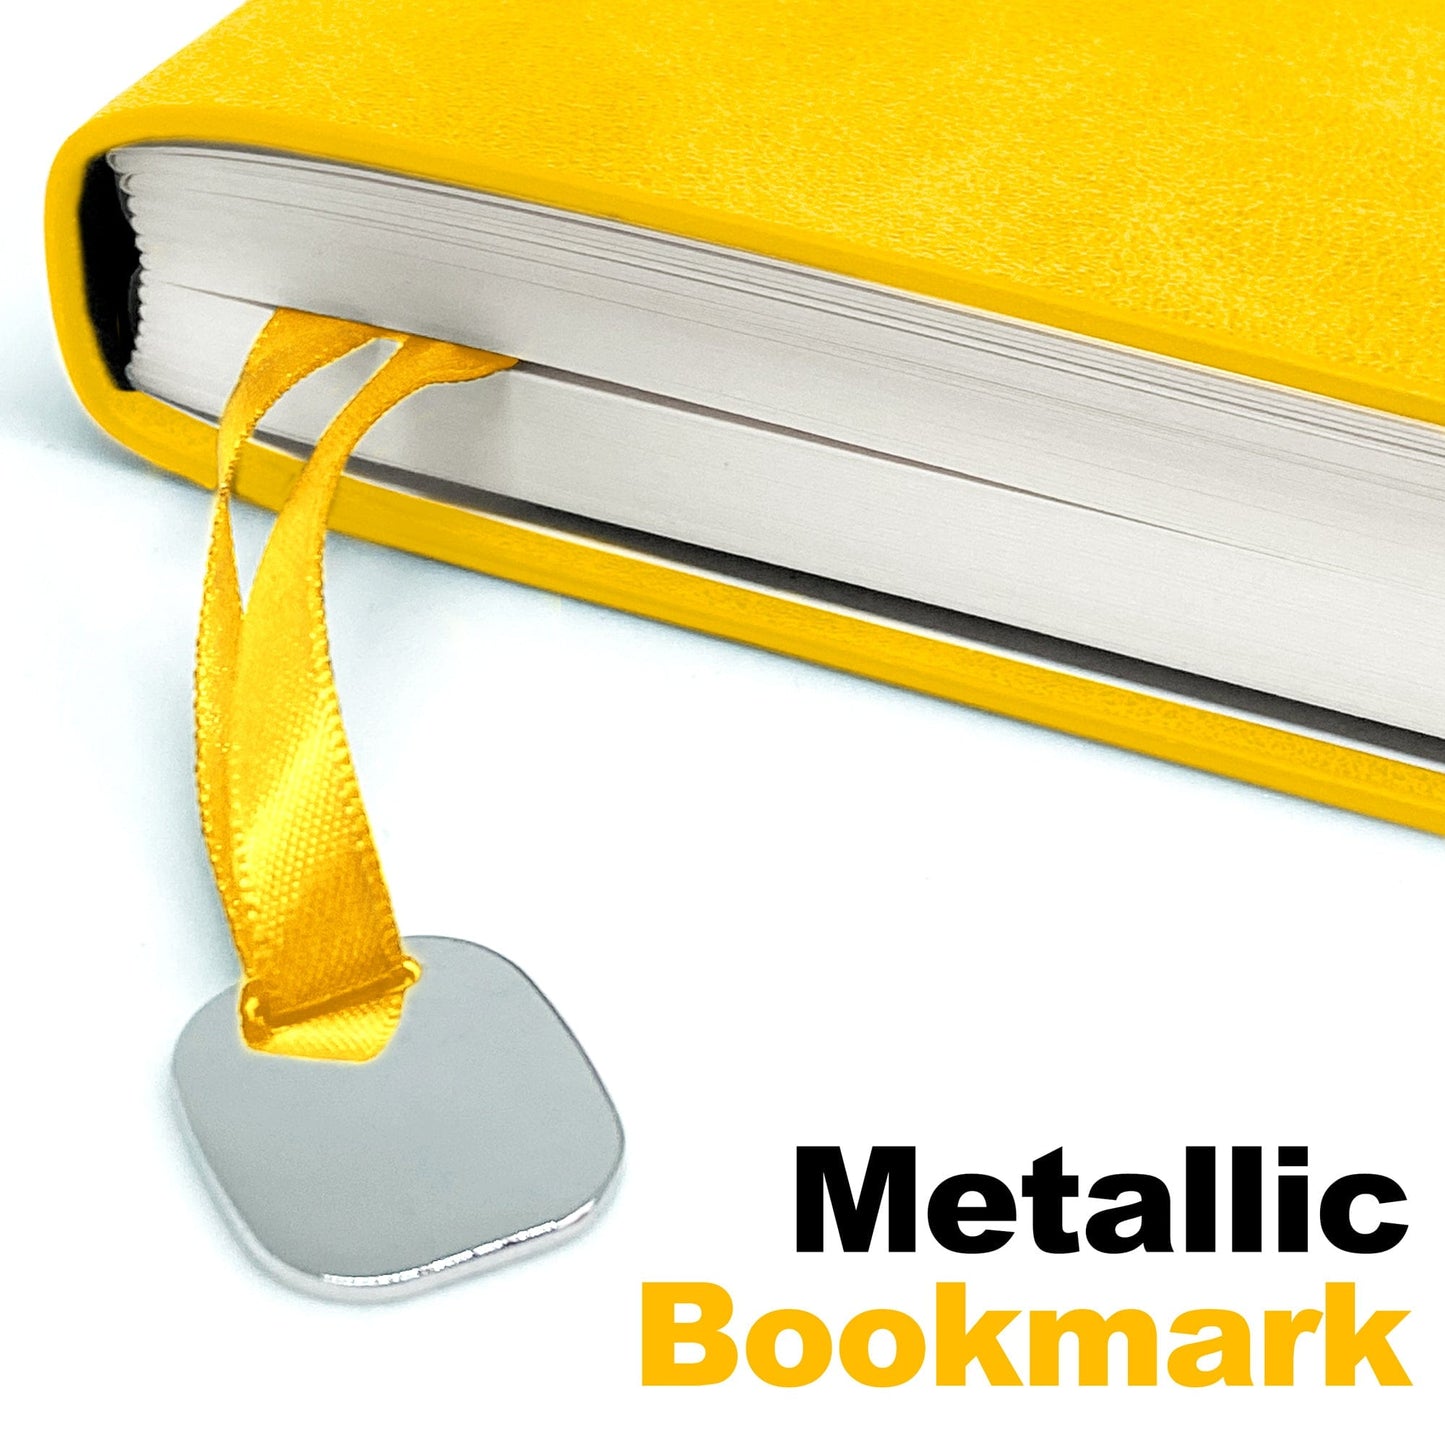 AKHALTEKE | Ochre Yellow - A5 Lined Journal Notebook